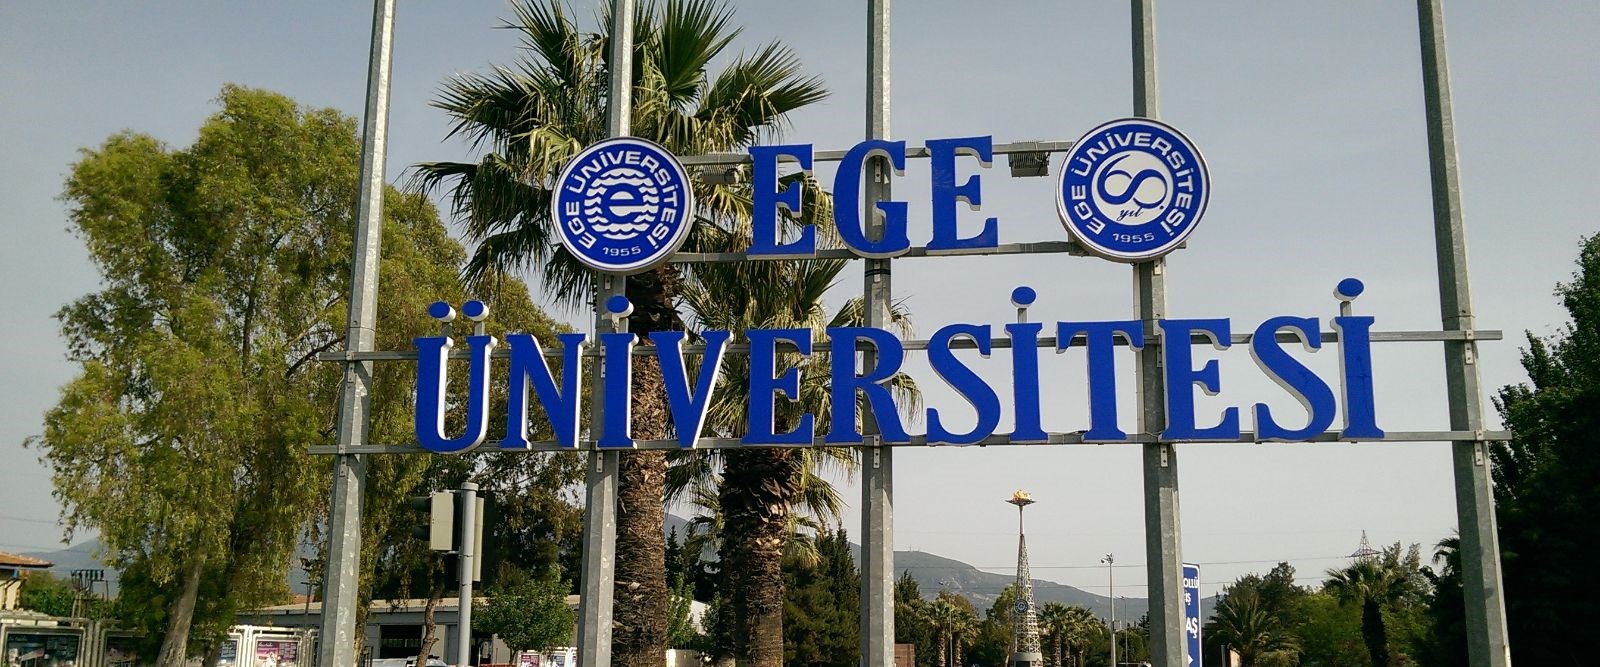 Ege Üniversitesi Teknopark’ı büyüyecek